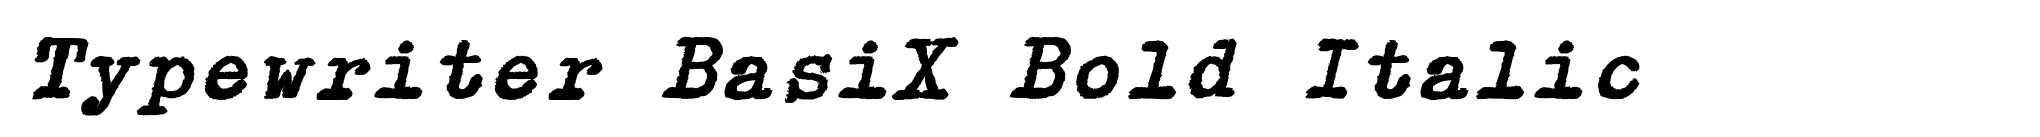 Typewriter BasiX Bold Italic image